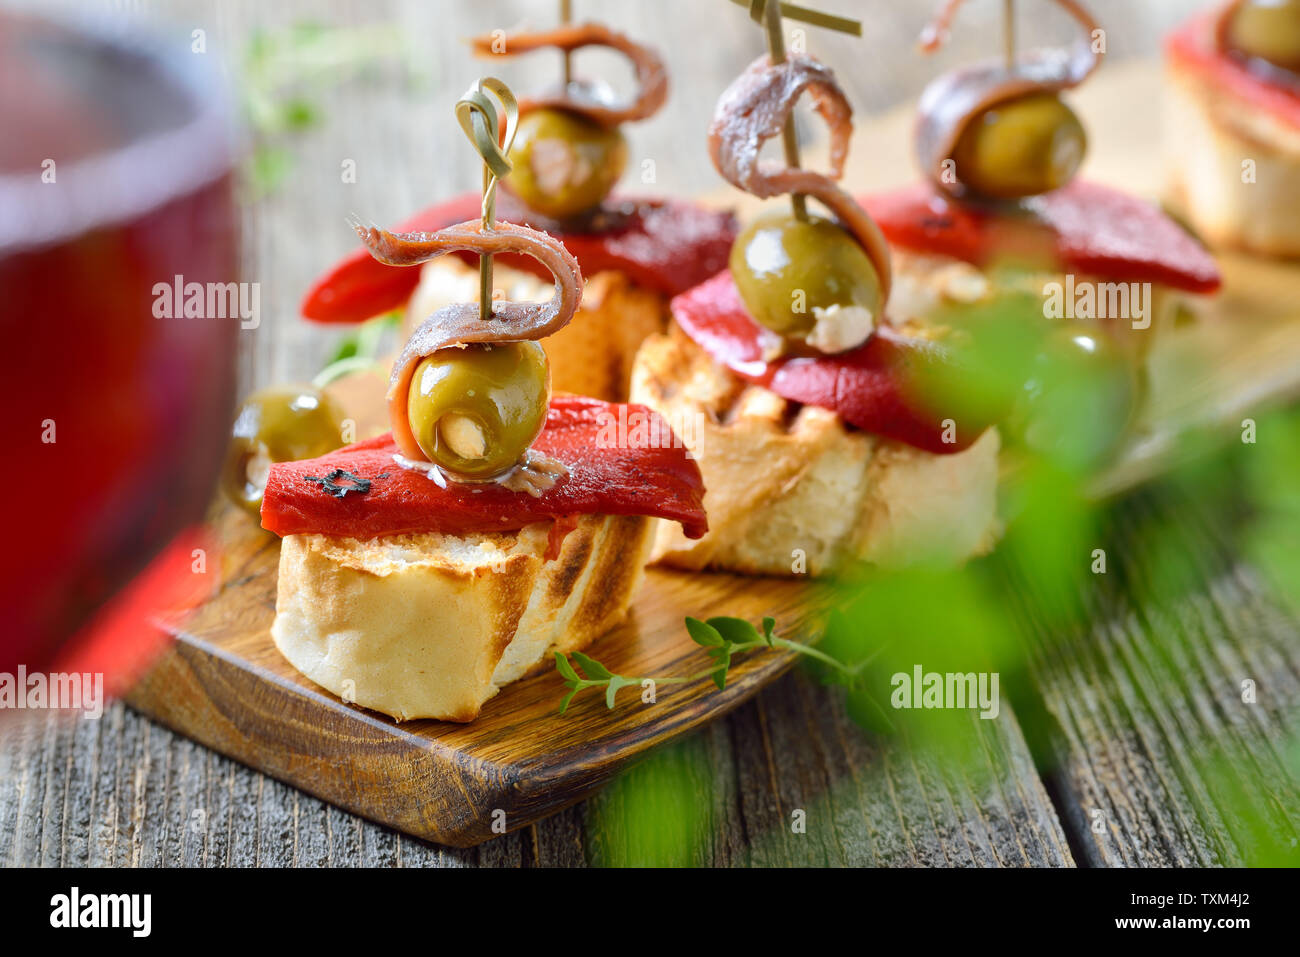 Pinchos espagnol : brochette de collations faits de pain grillé avec Poivrons et piments marinés, olives farcies et sur le dessus les filets d'anchois Banque D'Images